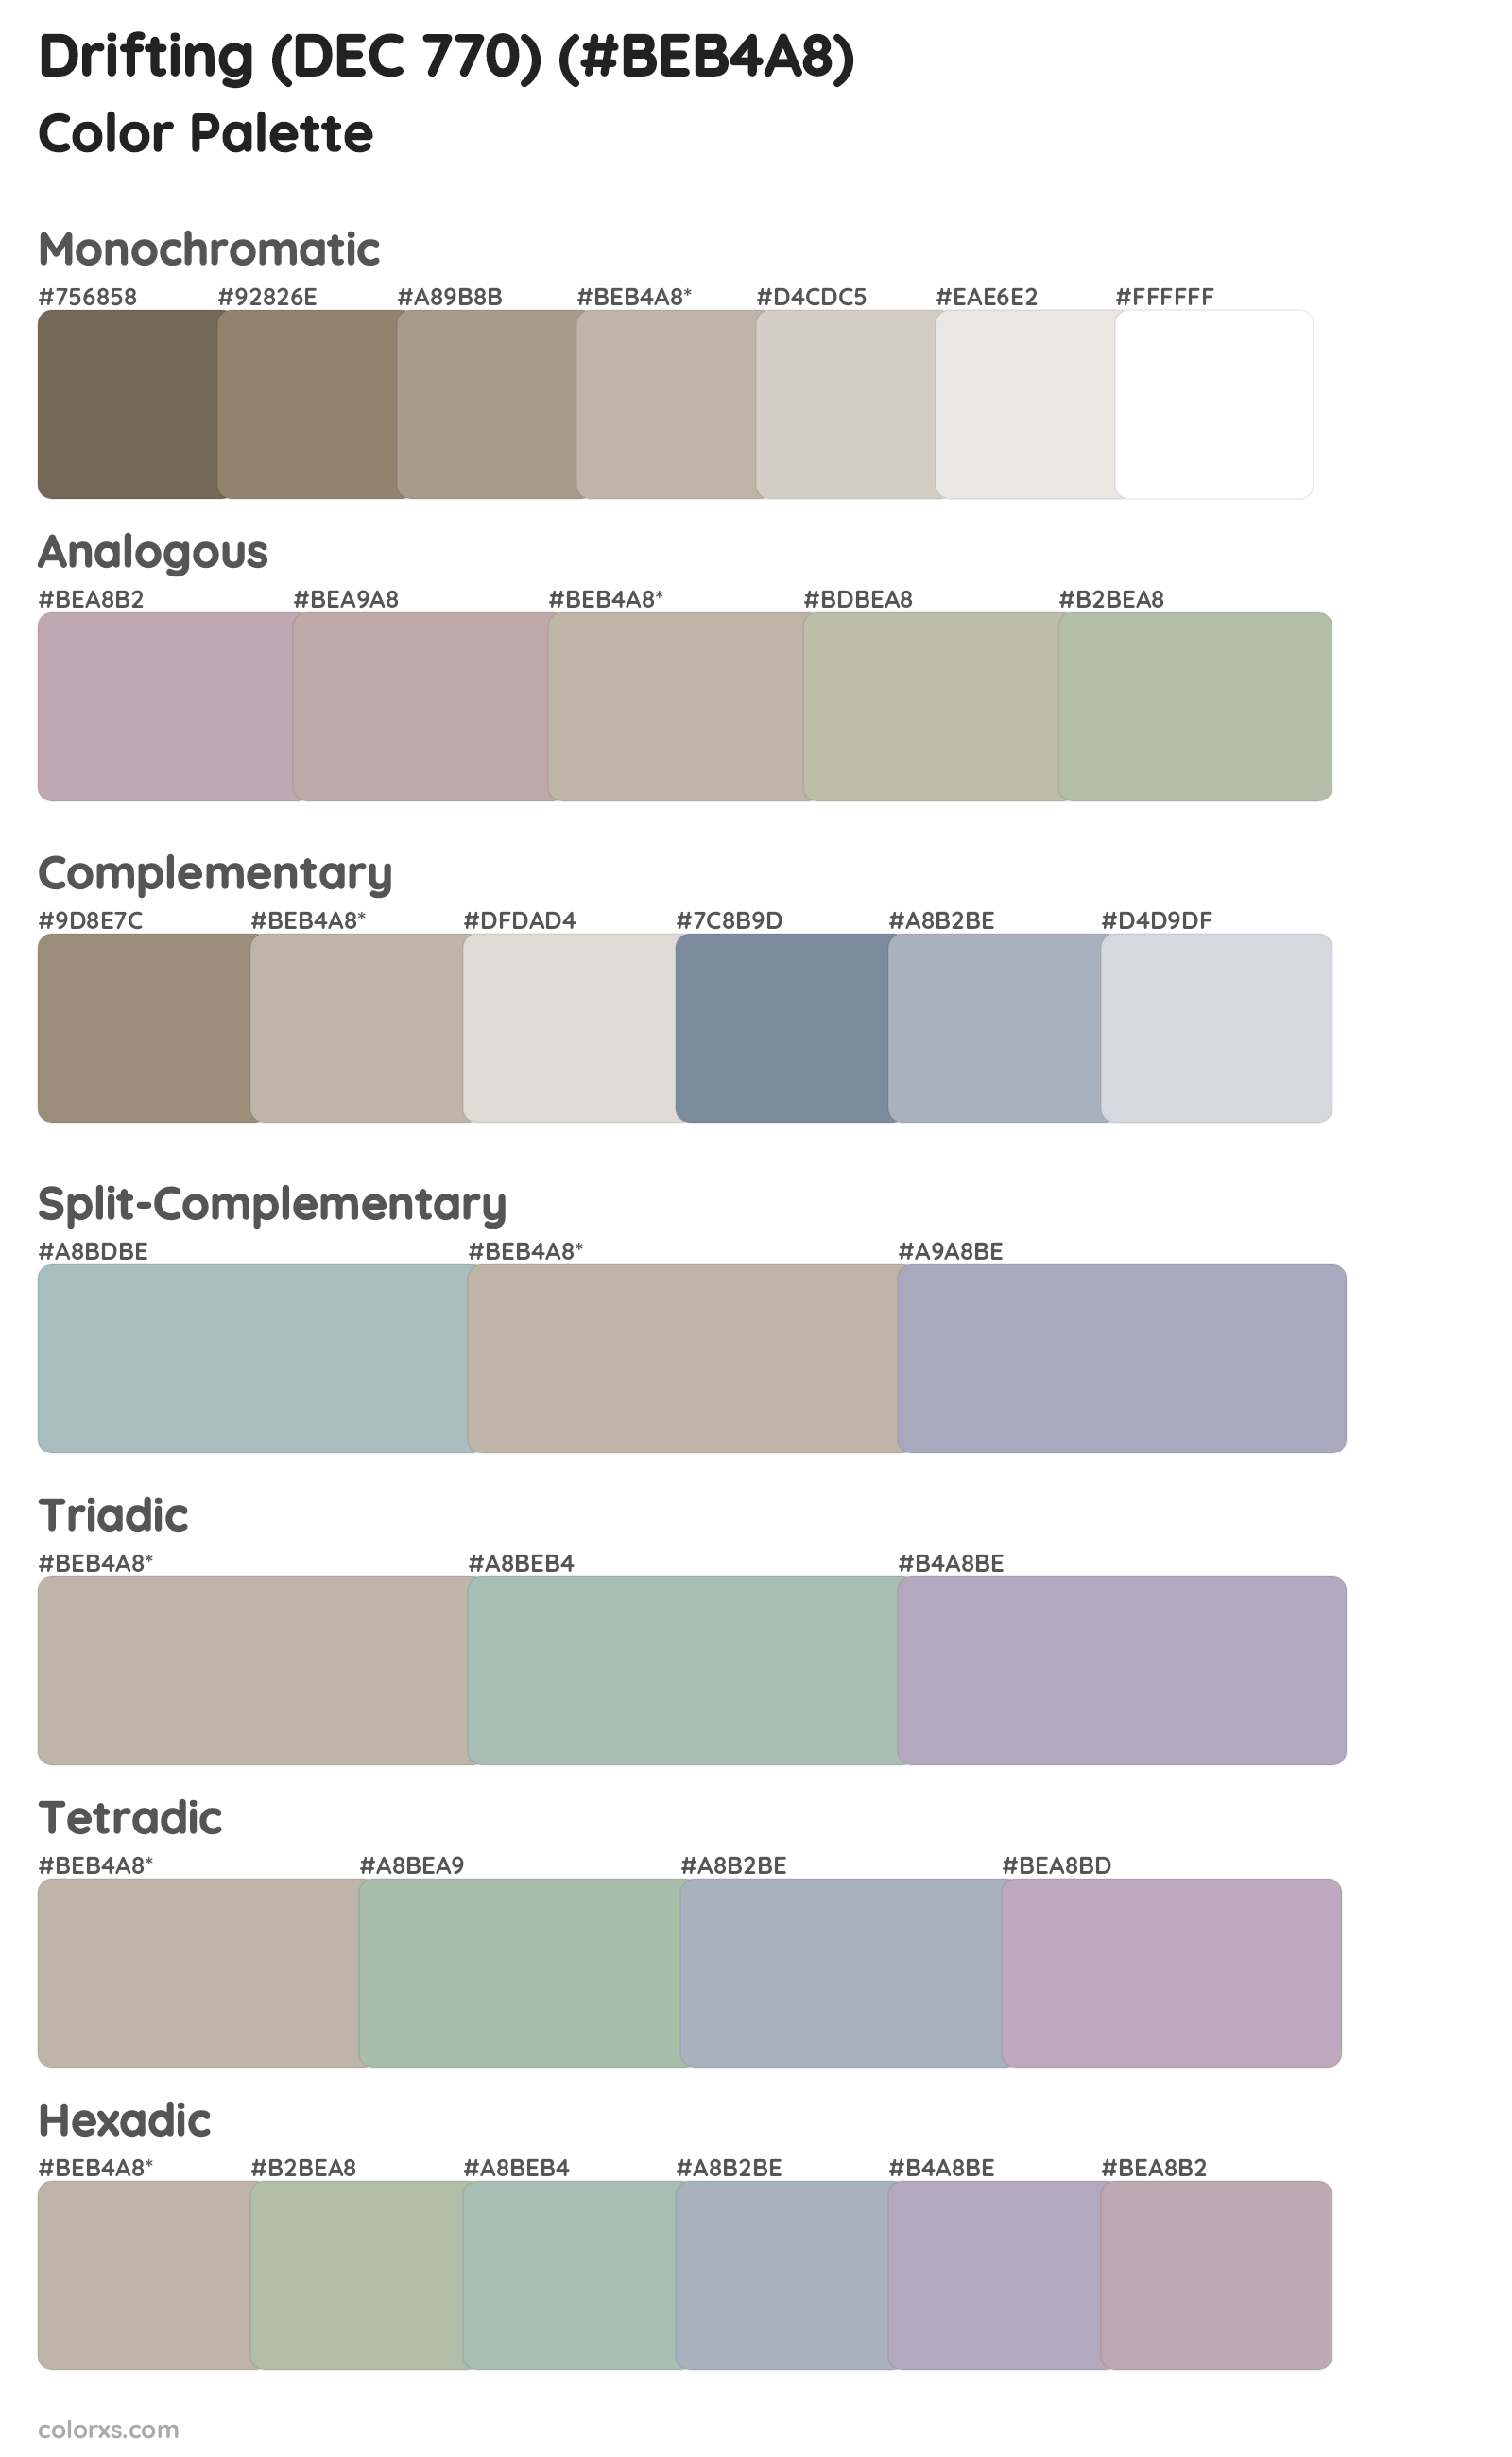 Drifting (DEC 770) Color Scheme Palettes